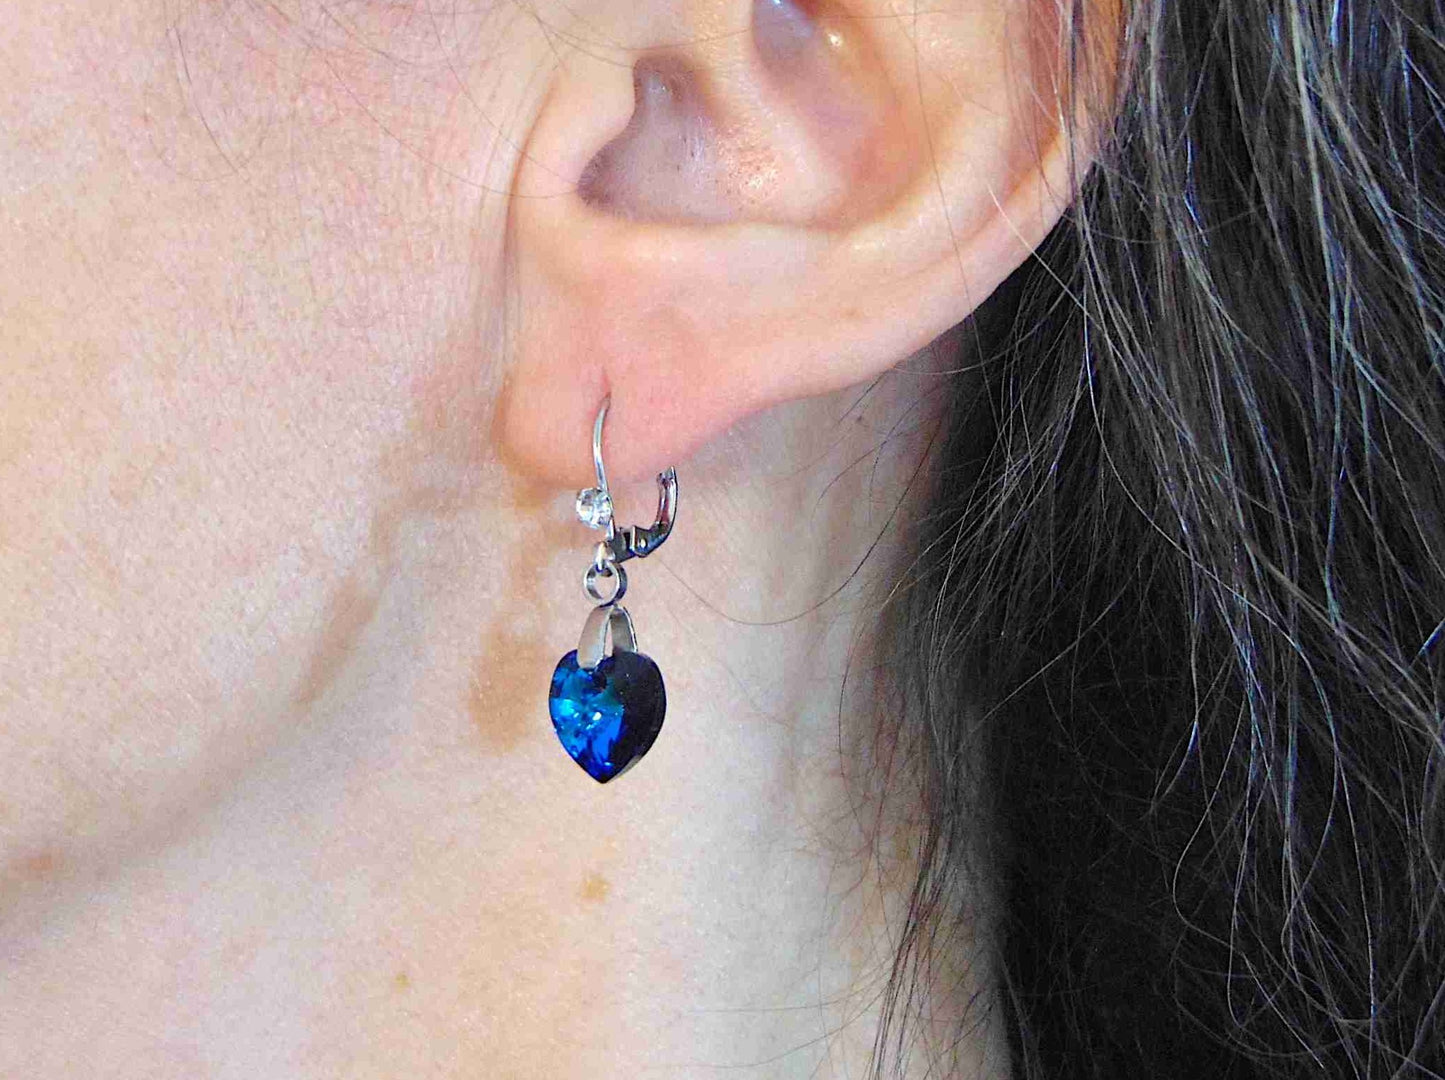 Boucles d'oreilles courtes coeurs de cristal Swarovski 10mm facetté Bermuda Blue (turquoise), crochets à levier acier inoxydable avec mini-cristaux clairs